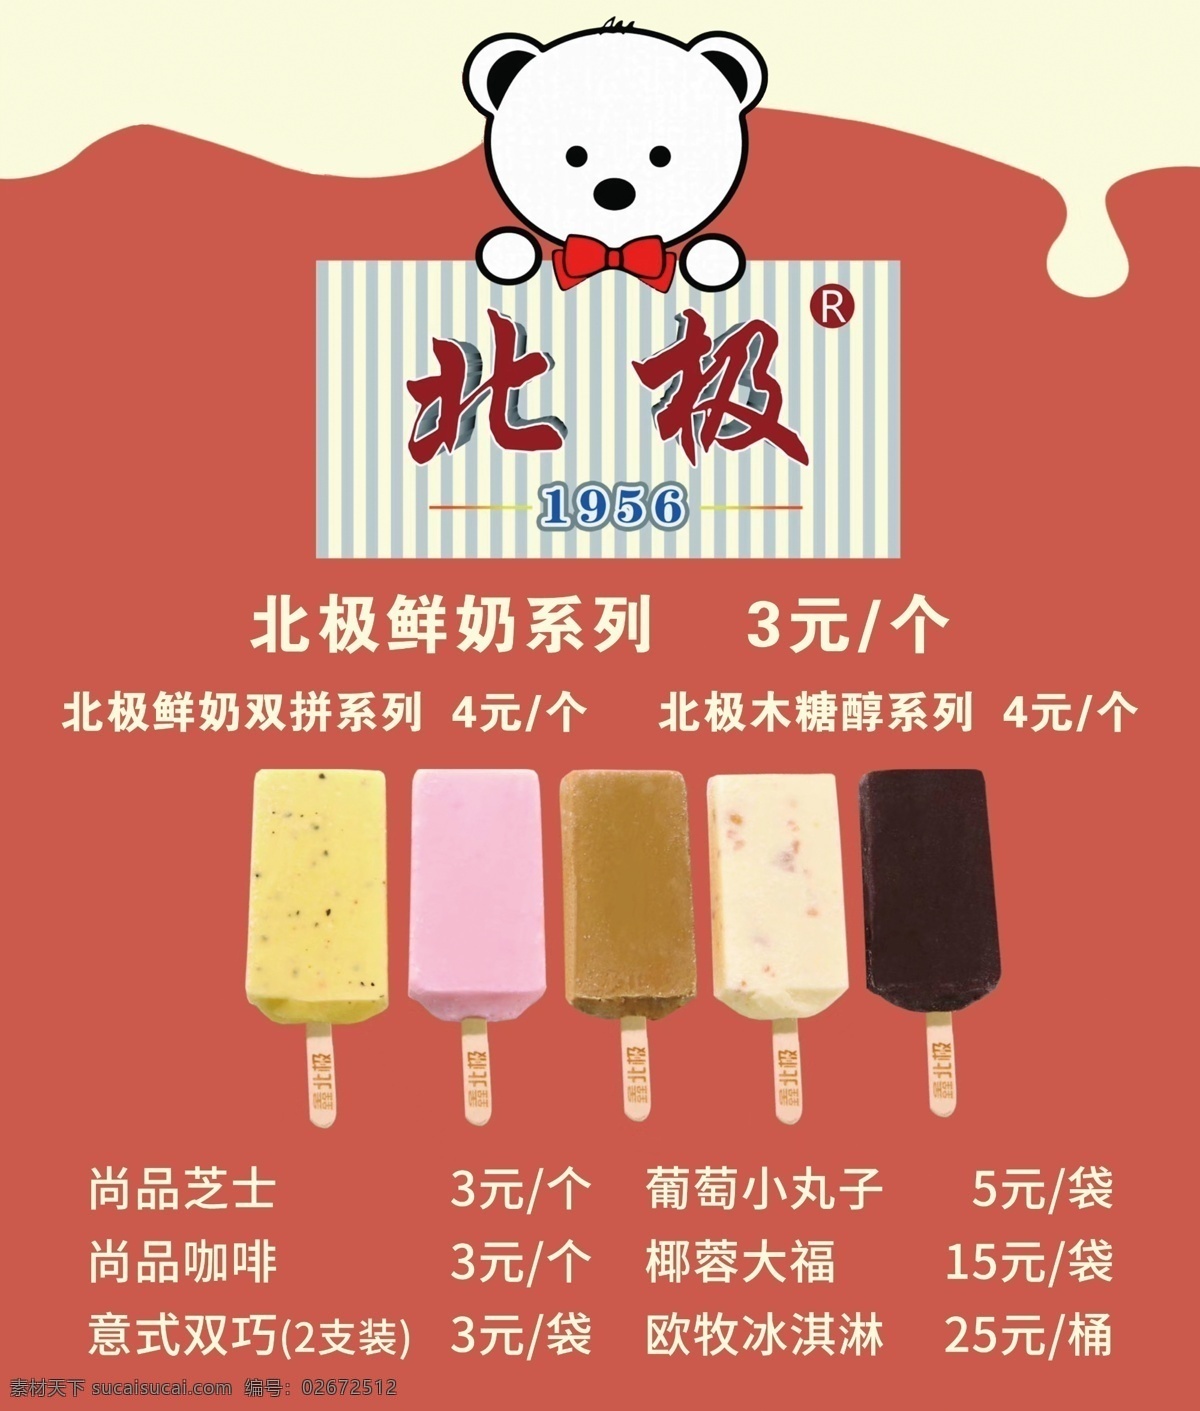 冰果价格表 价格表 冰果 雪糕 冰淇淋 雪糕价格表 冰淇淋价格表